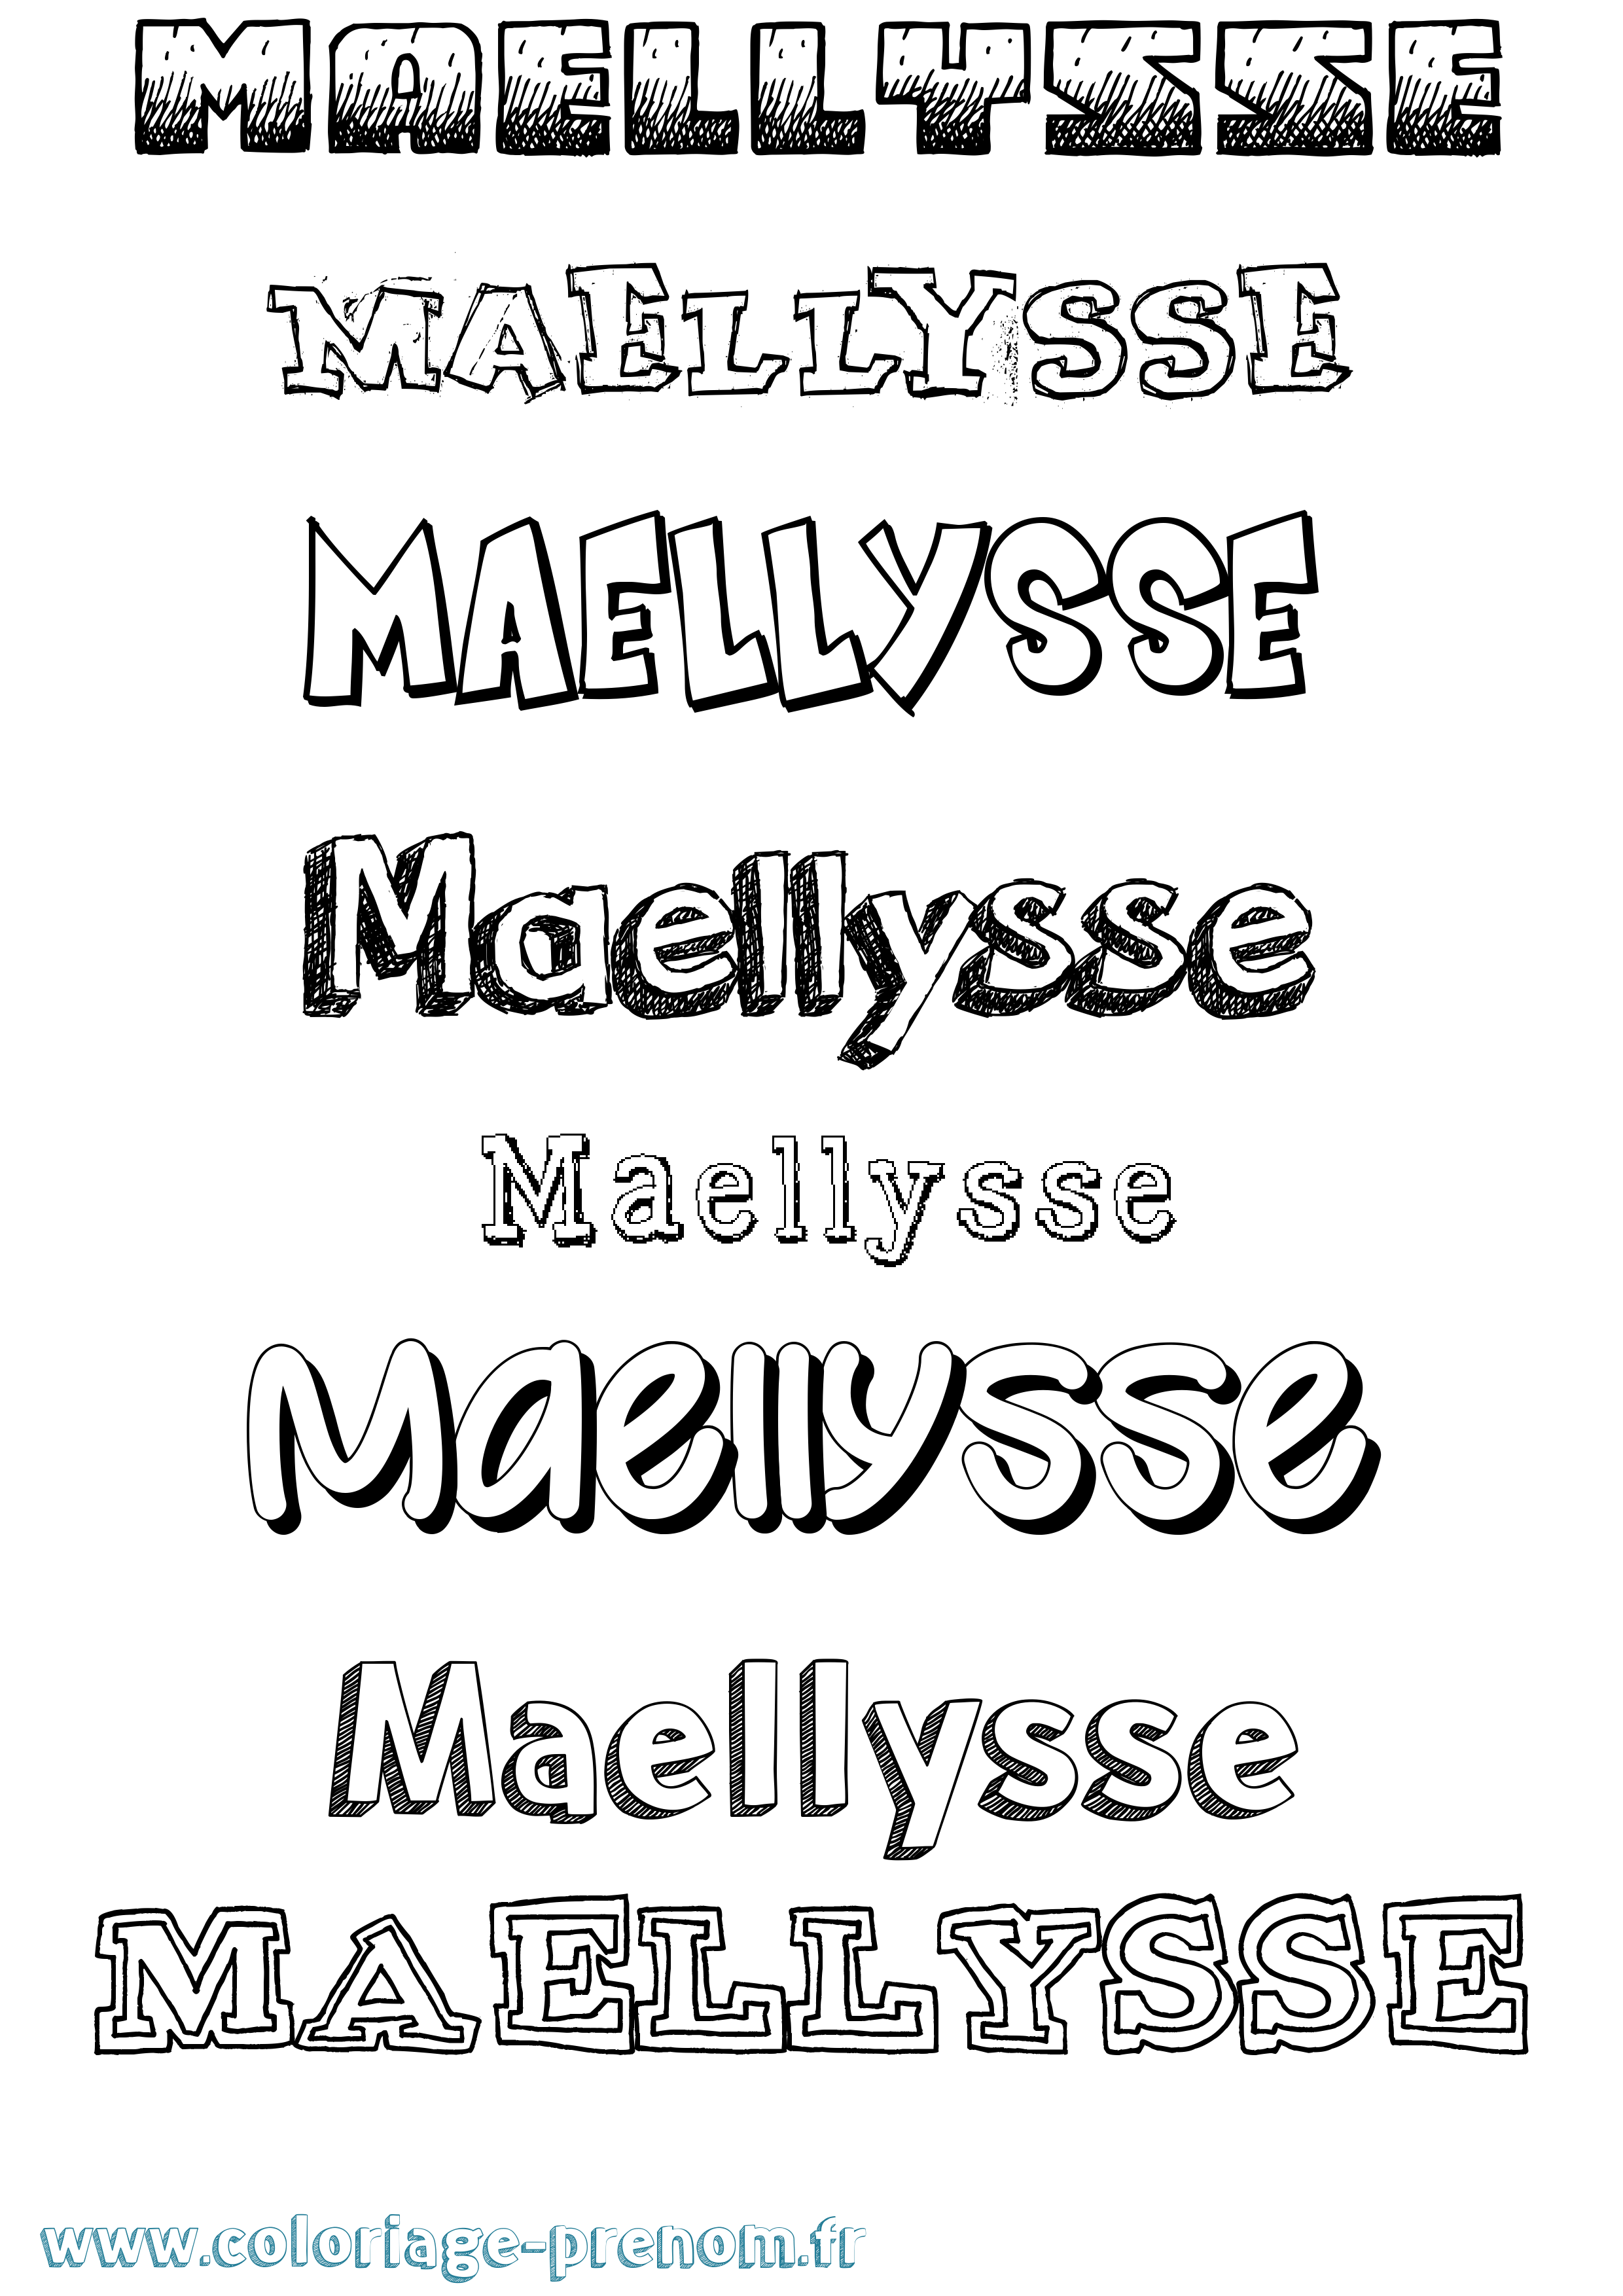 Coloriage prénom Maellysse Dessiné